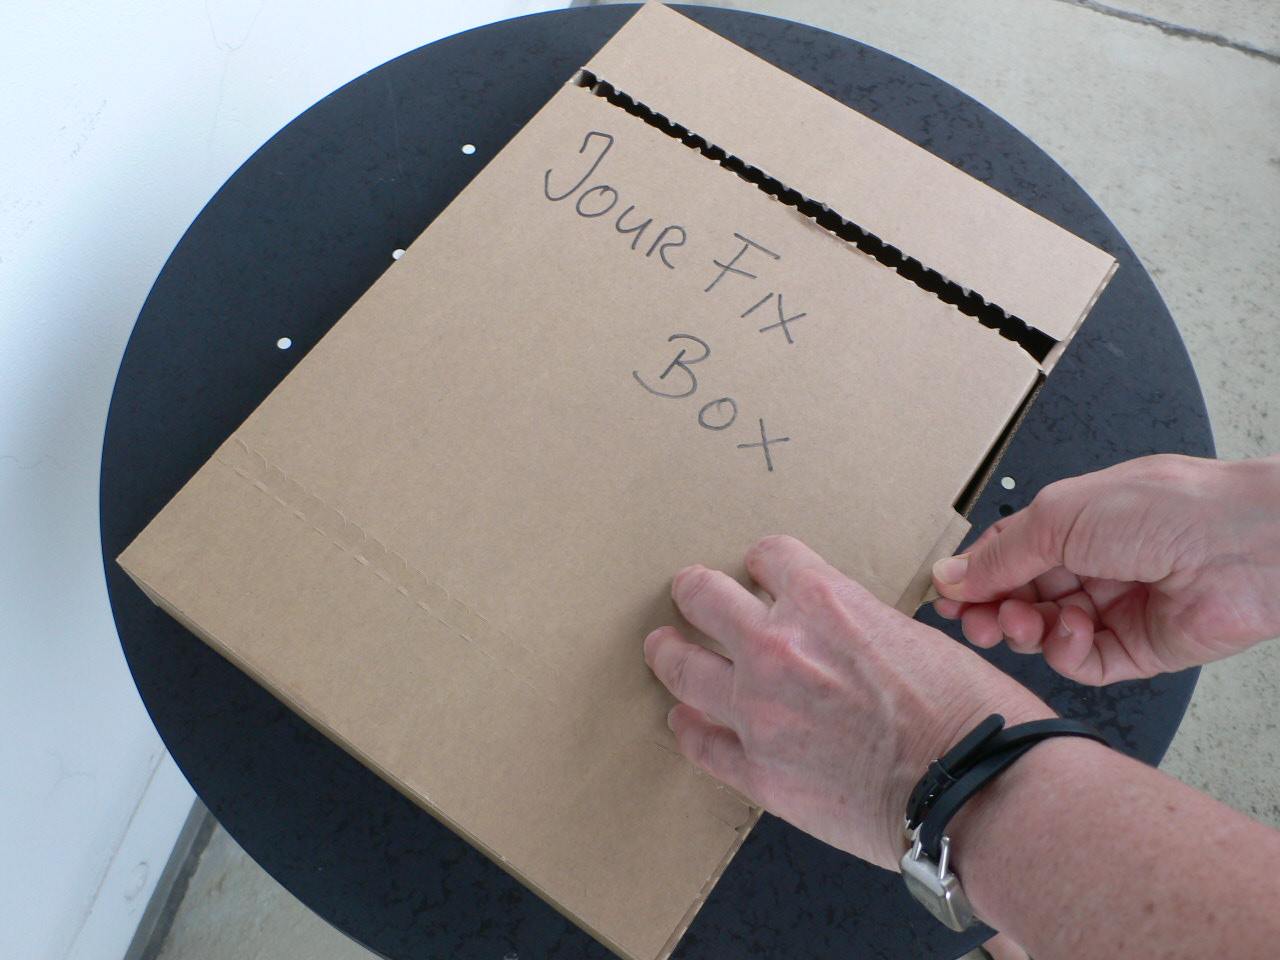 Öffnen der jour fix-Box / Opening The jour fix Box